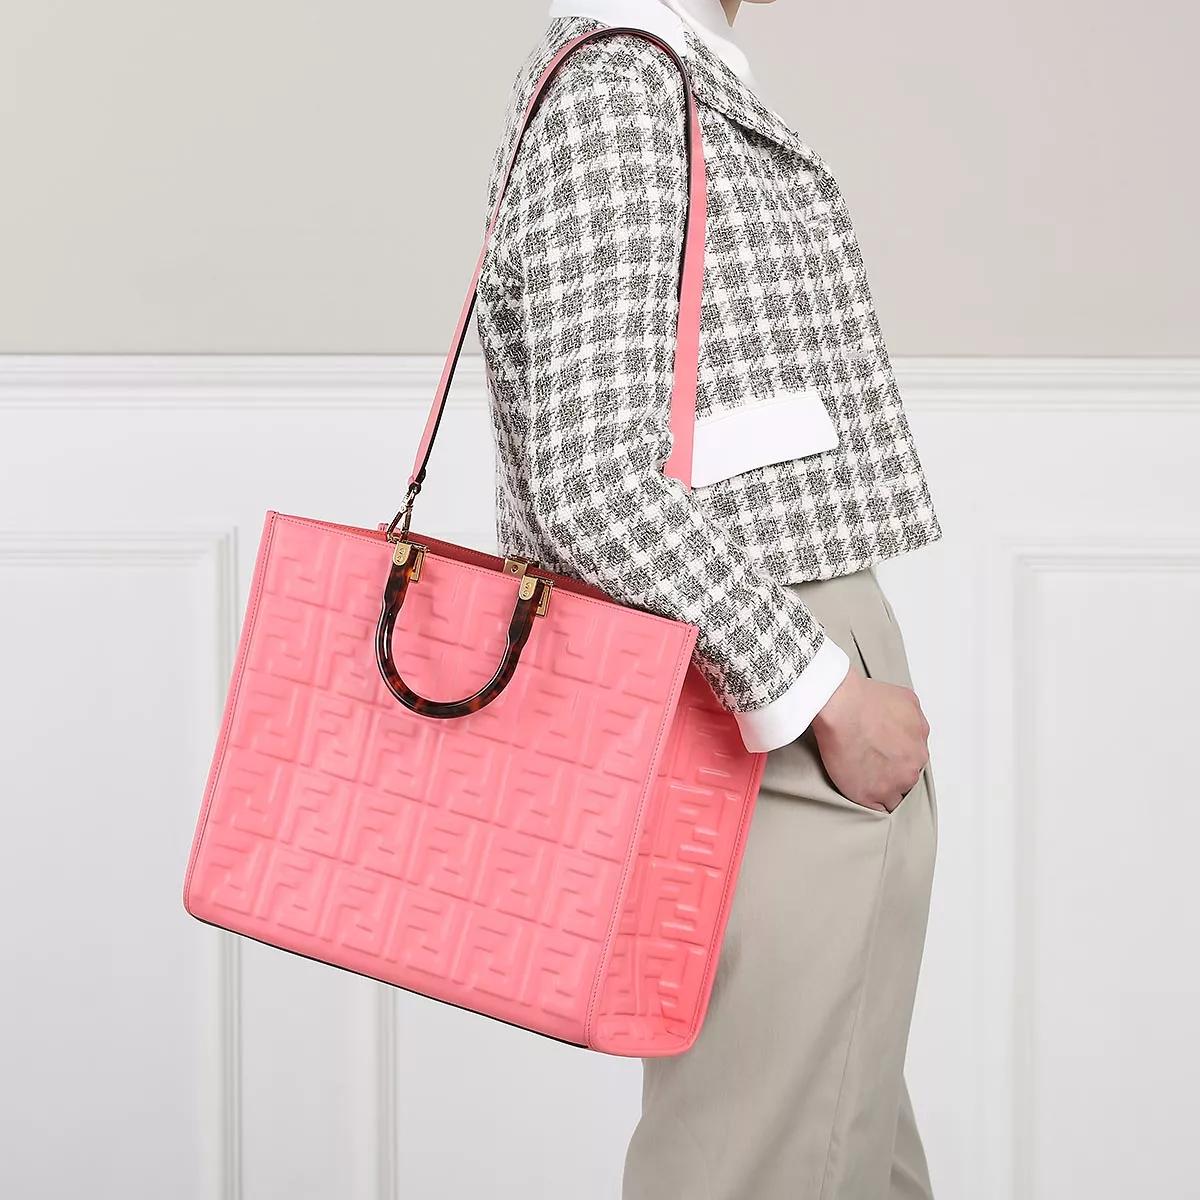 fendi tote - sunshine embossed leather tote bag - gr. unisize - in rosa - fÃ¼r damen pink donna